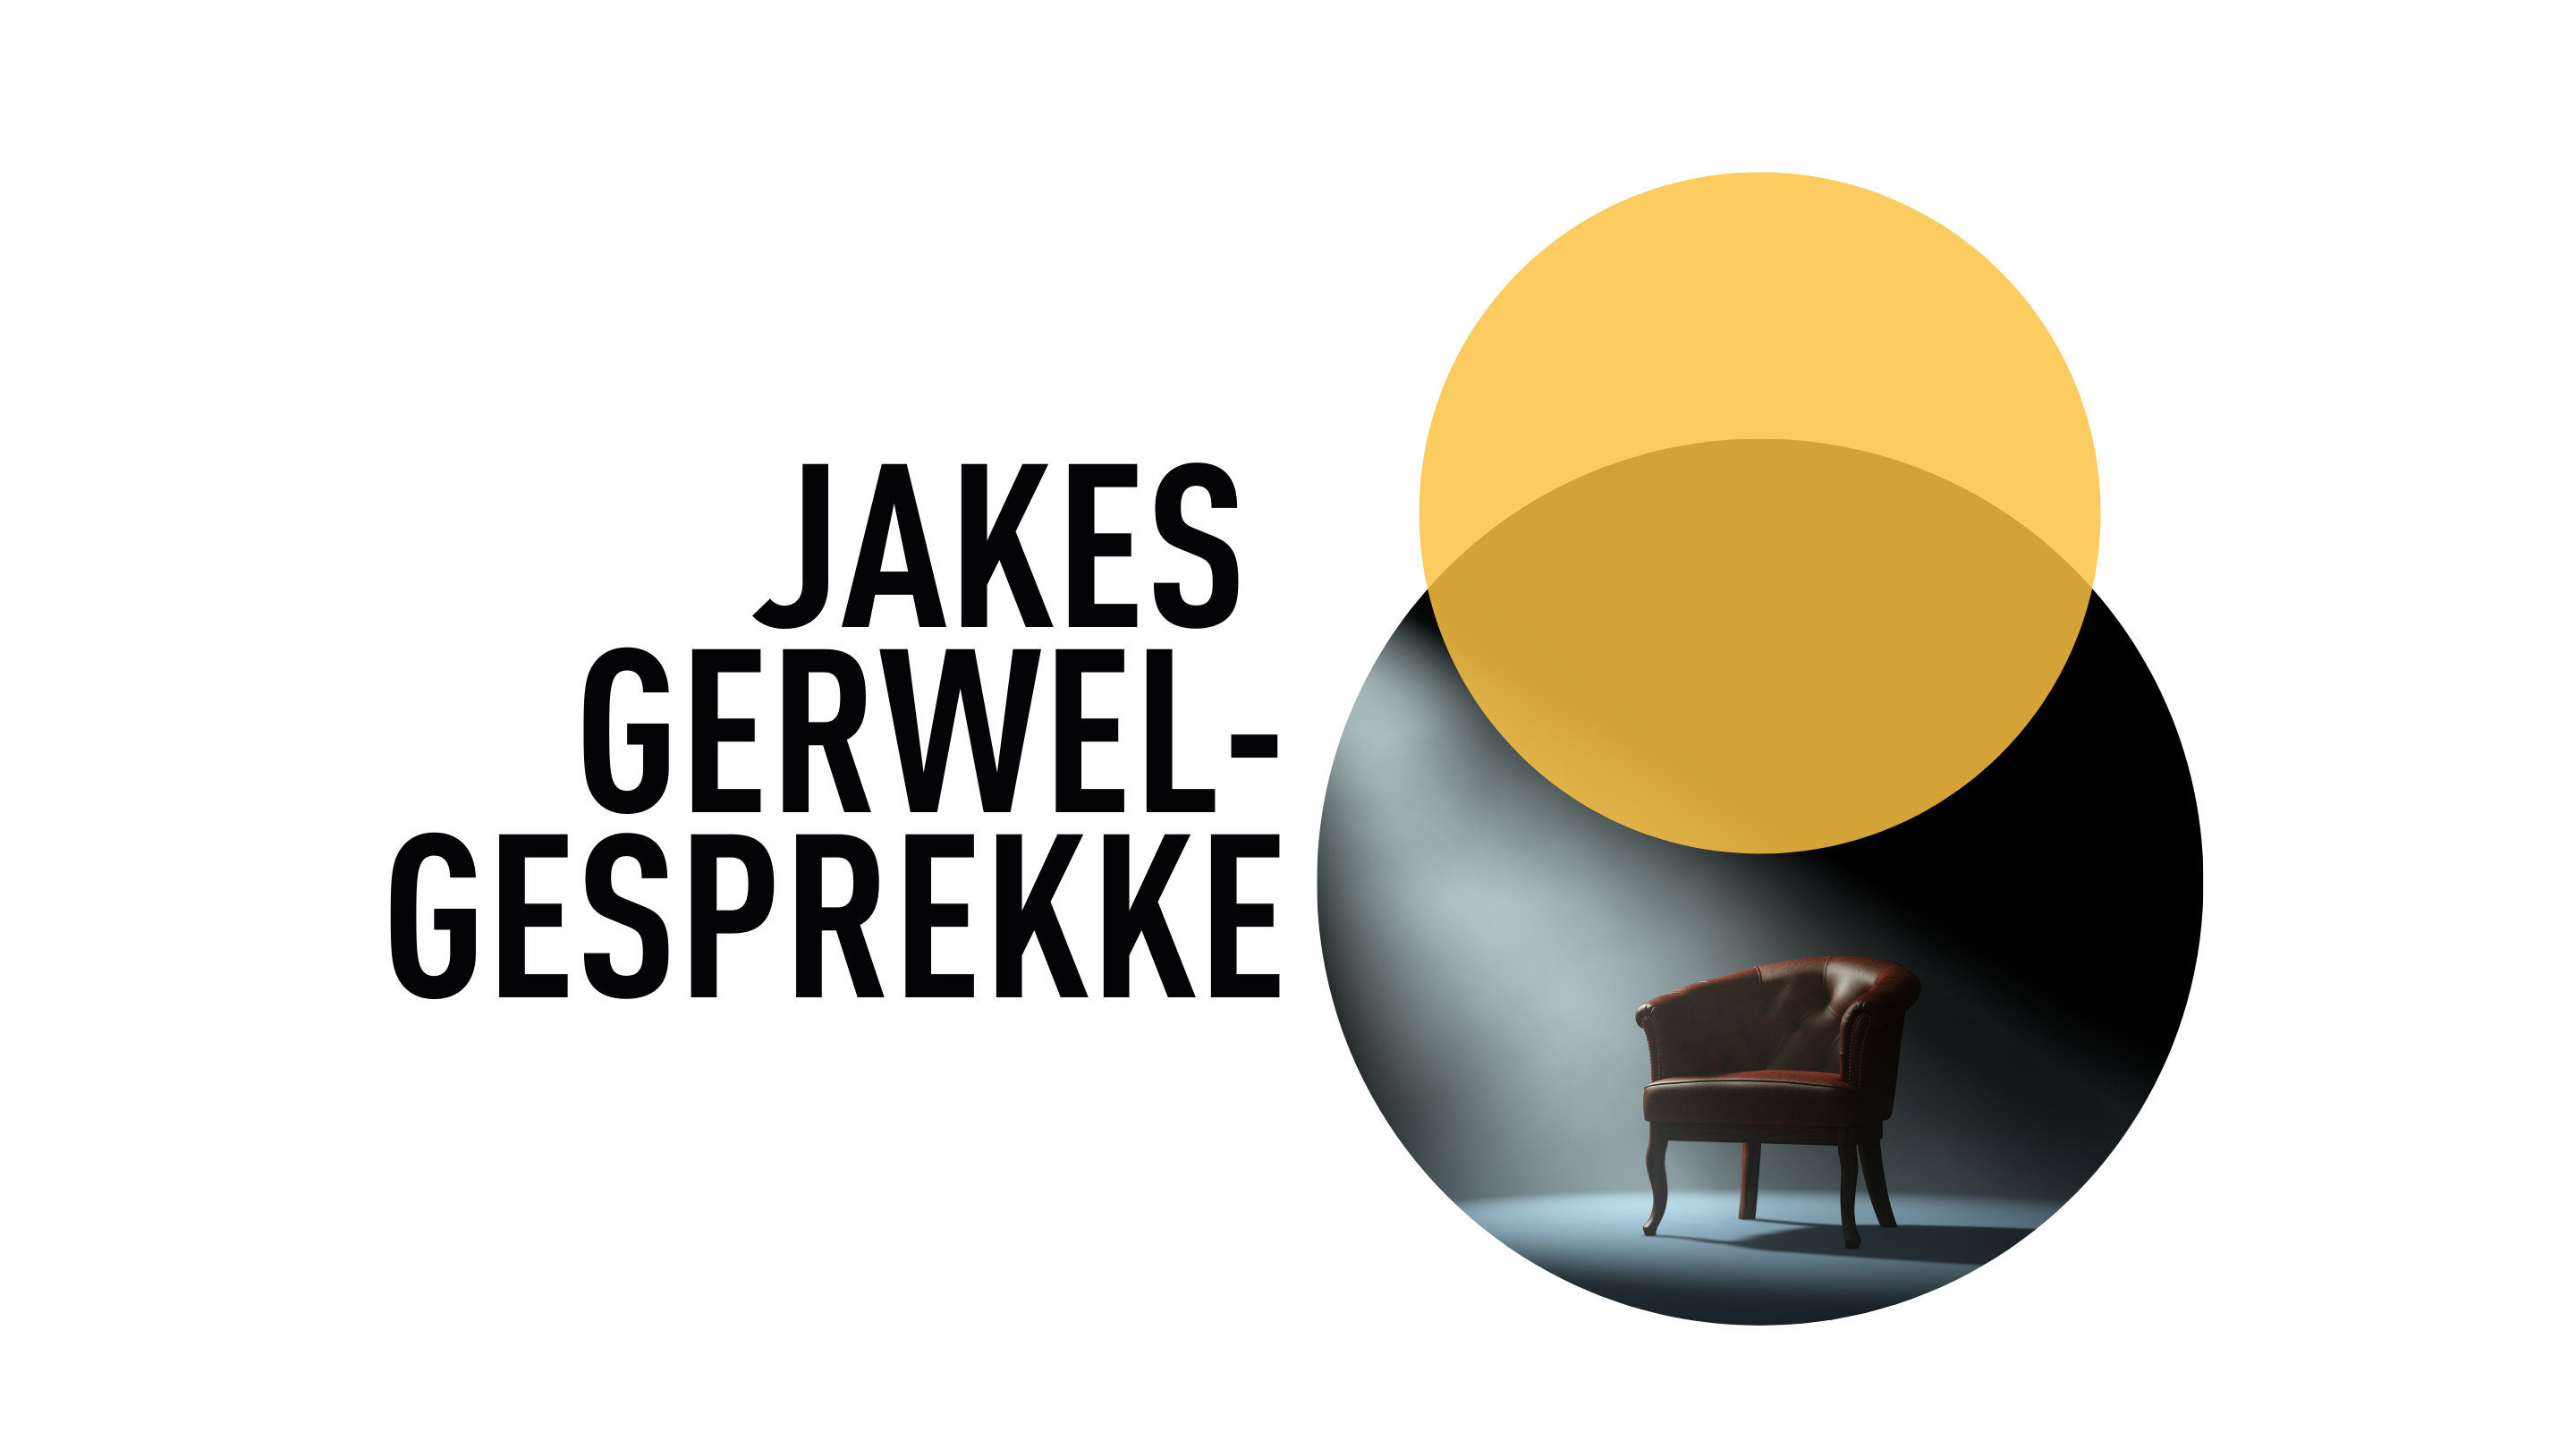 JAKES GERWEL-GESPREKKE